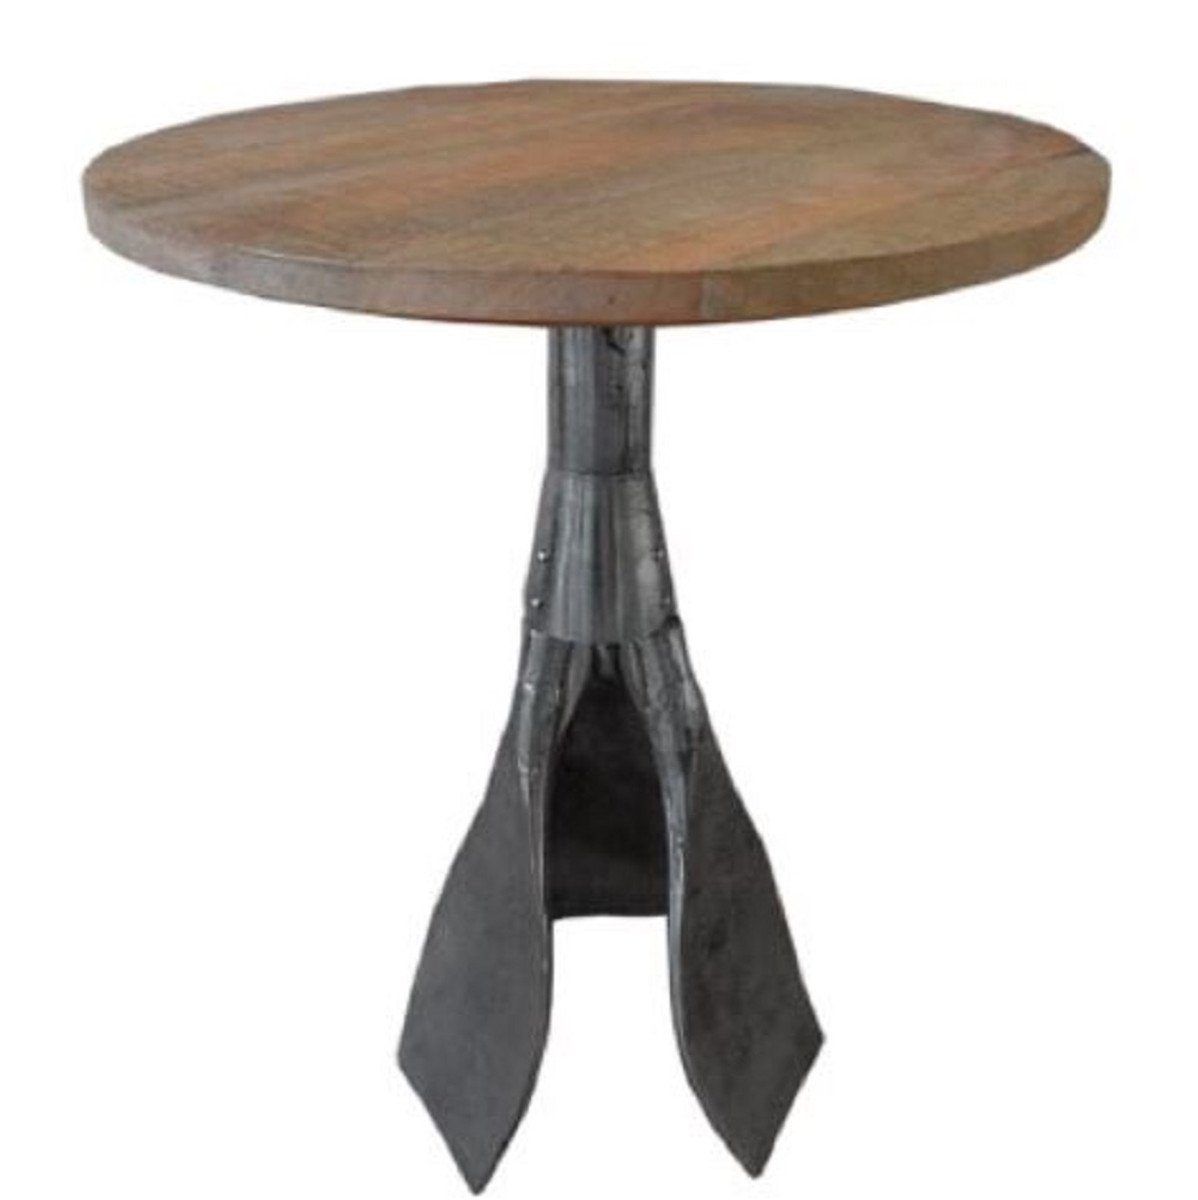 Casa Padrino Beistelltisch Designer Beistelltisch Braun / Silber Ø 59 x H. 74 cm - Runder Tisch mit Paddelbeinen